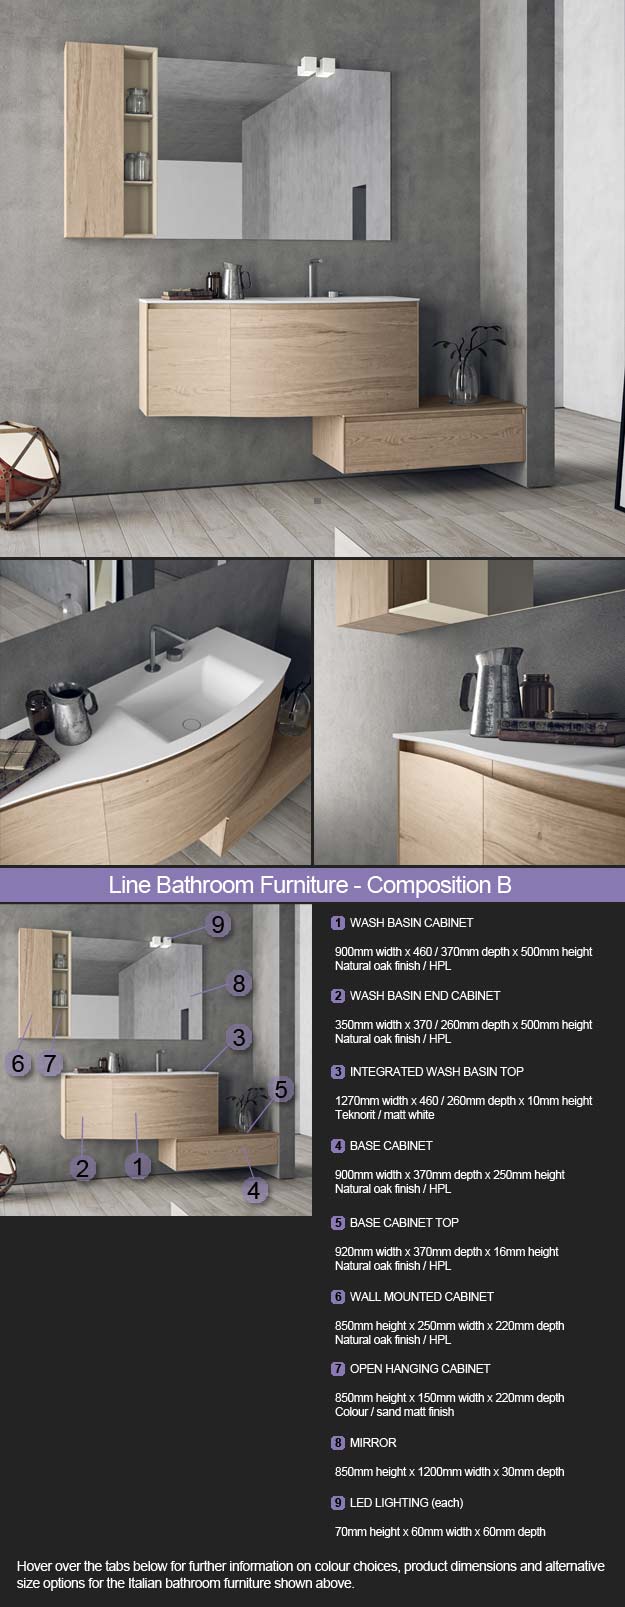 Line Bathroom Furniture - Room Set 2 (3B)